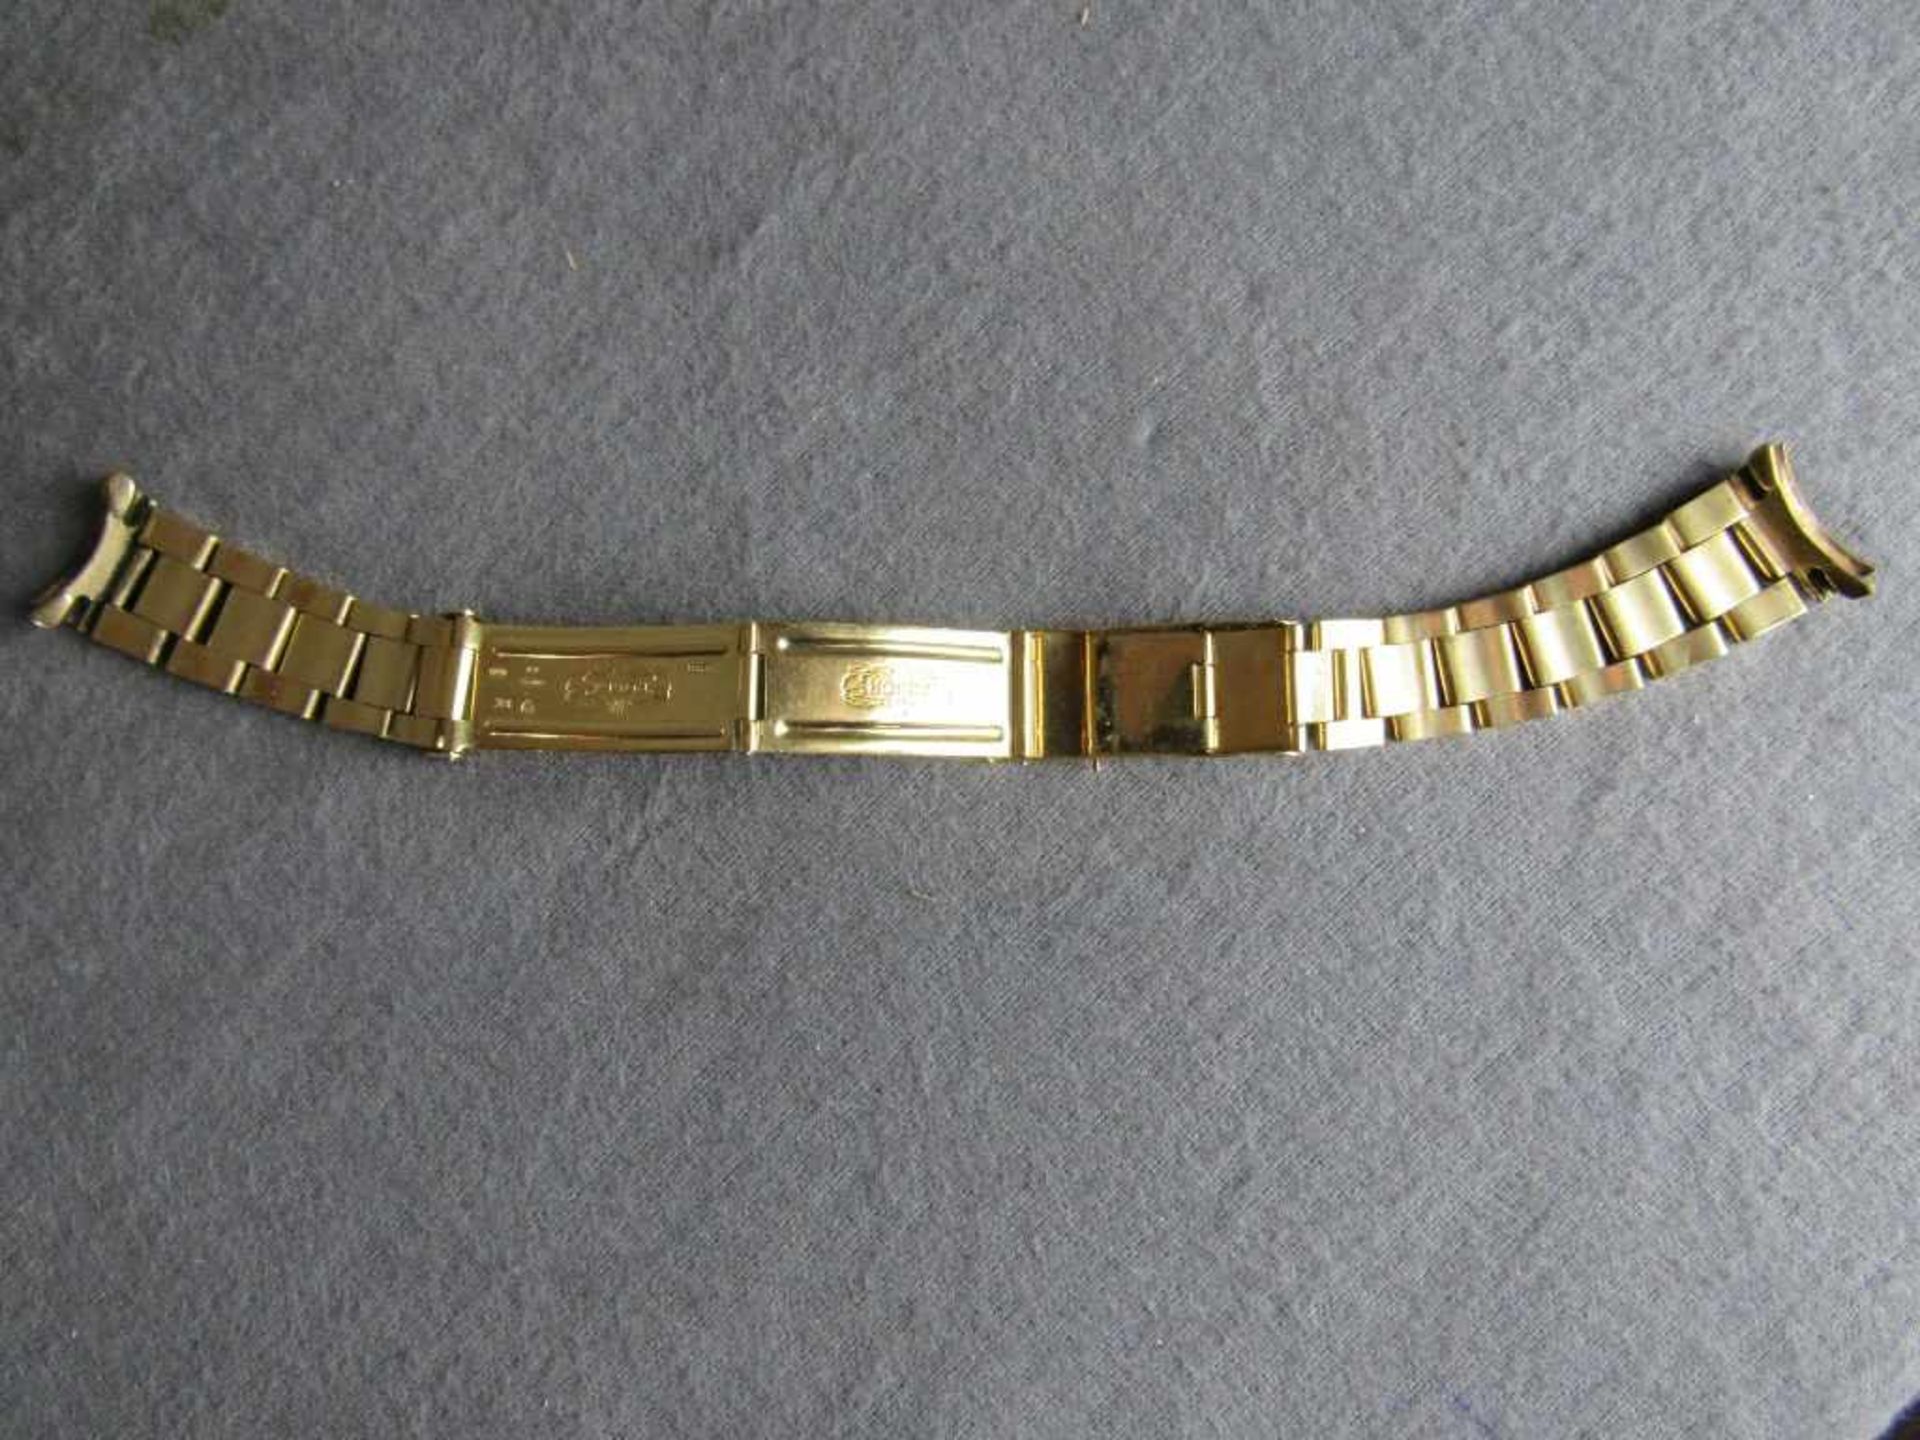 Uhrenband mehrfach gepunzt Restaurationsobjekt Gold stark bestoßen und berieben ungeprüft Gewicht: